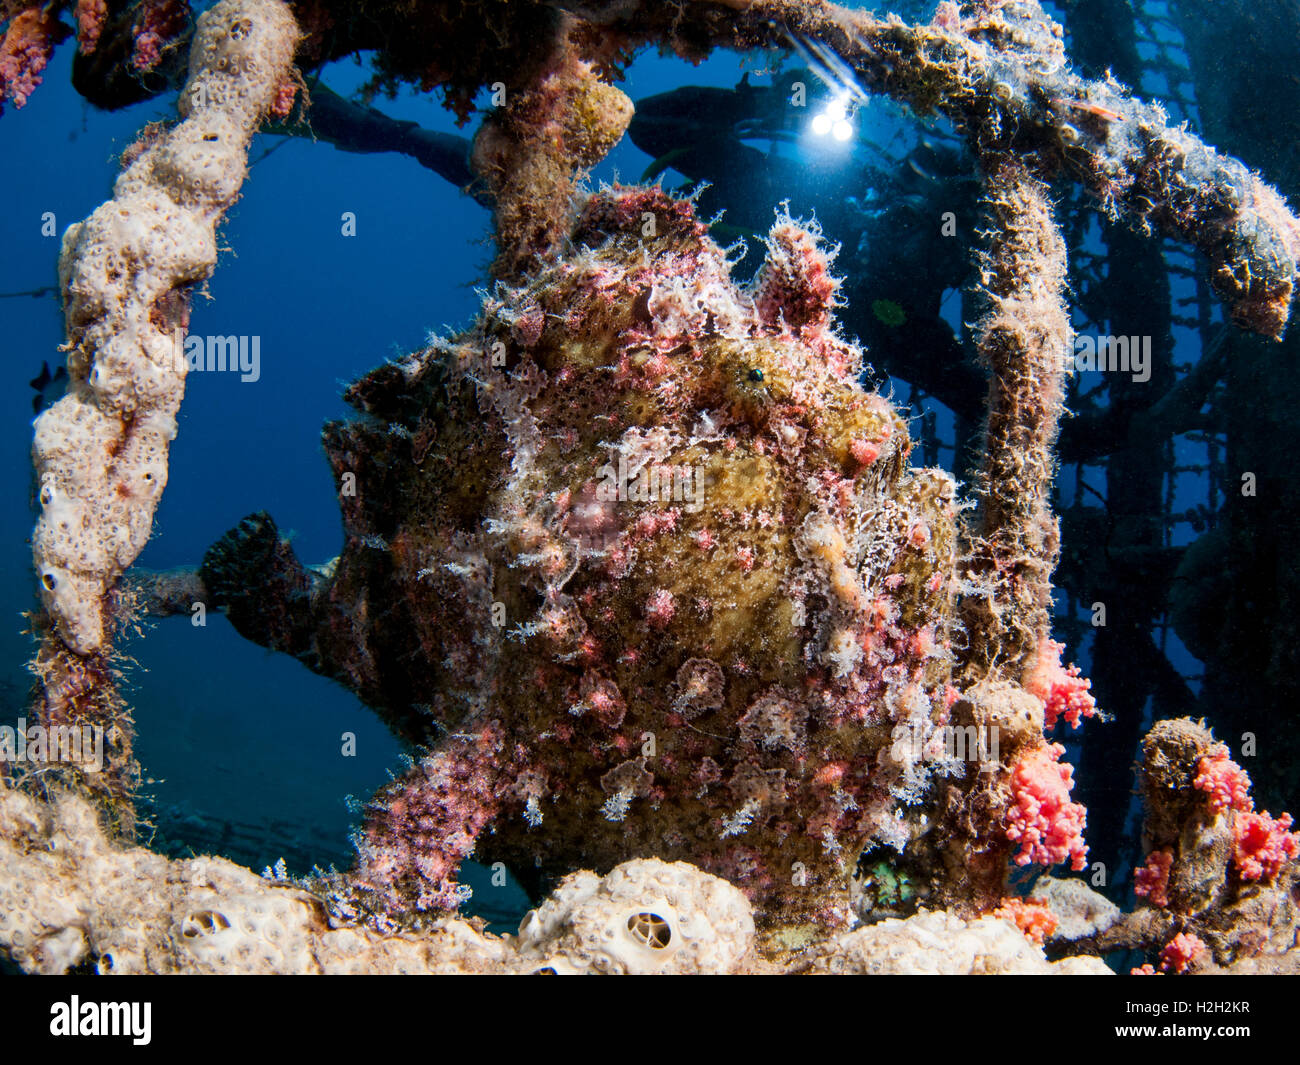 Poissons grenouille (Antennarius sp.) caché dans le corail. La coloration de l'poissons grenouille lui fournit un camouflage contre les prédateurs Banque D'Images